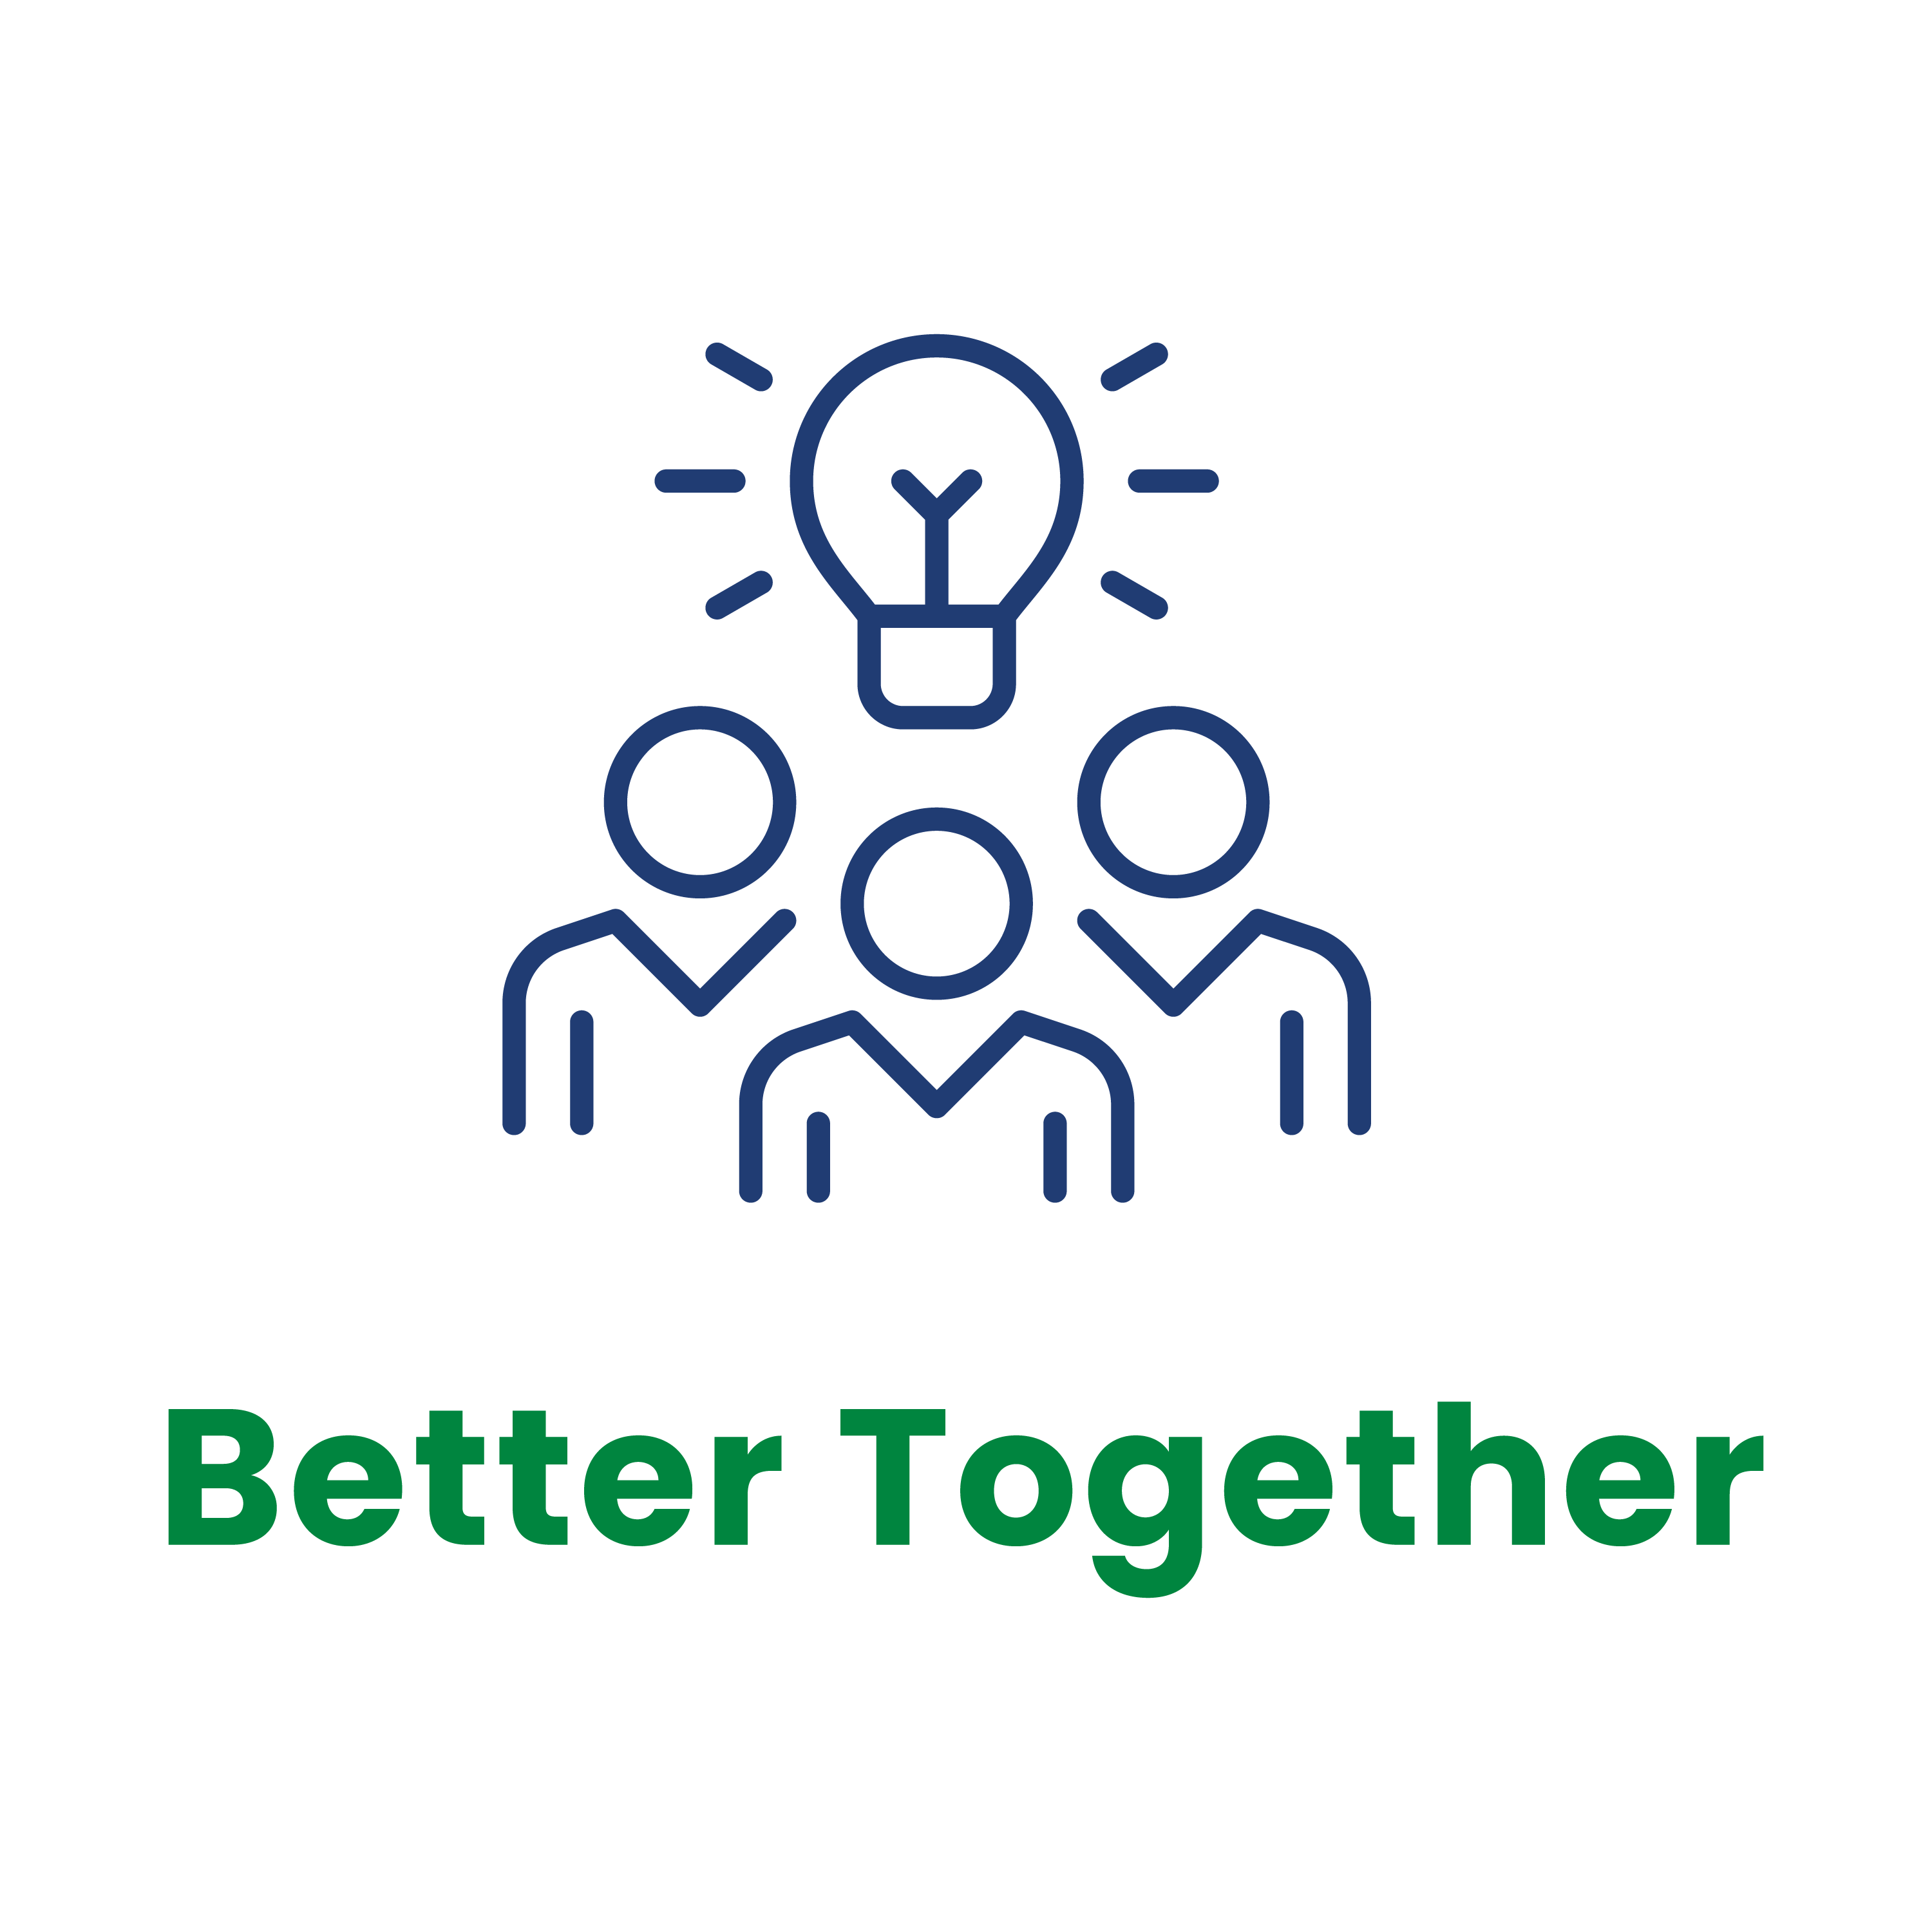 Value logo - Better Together